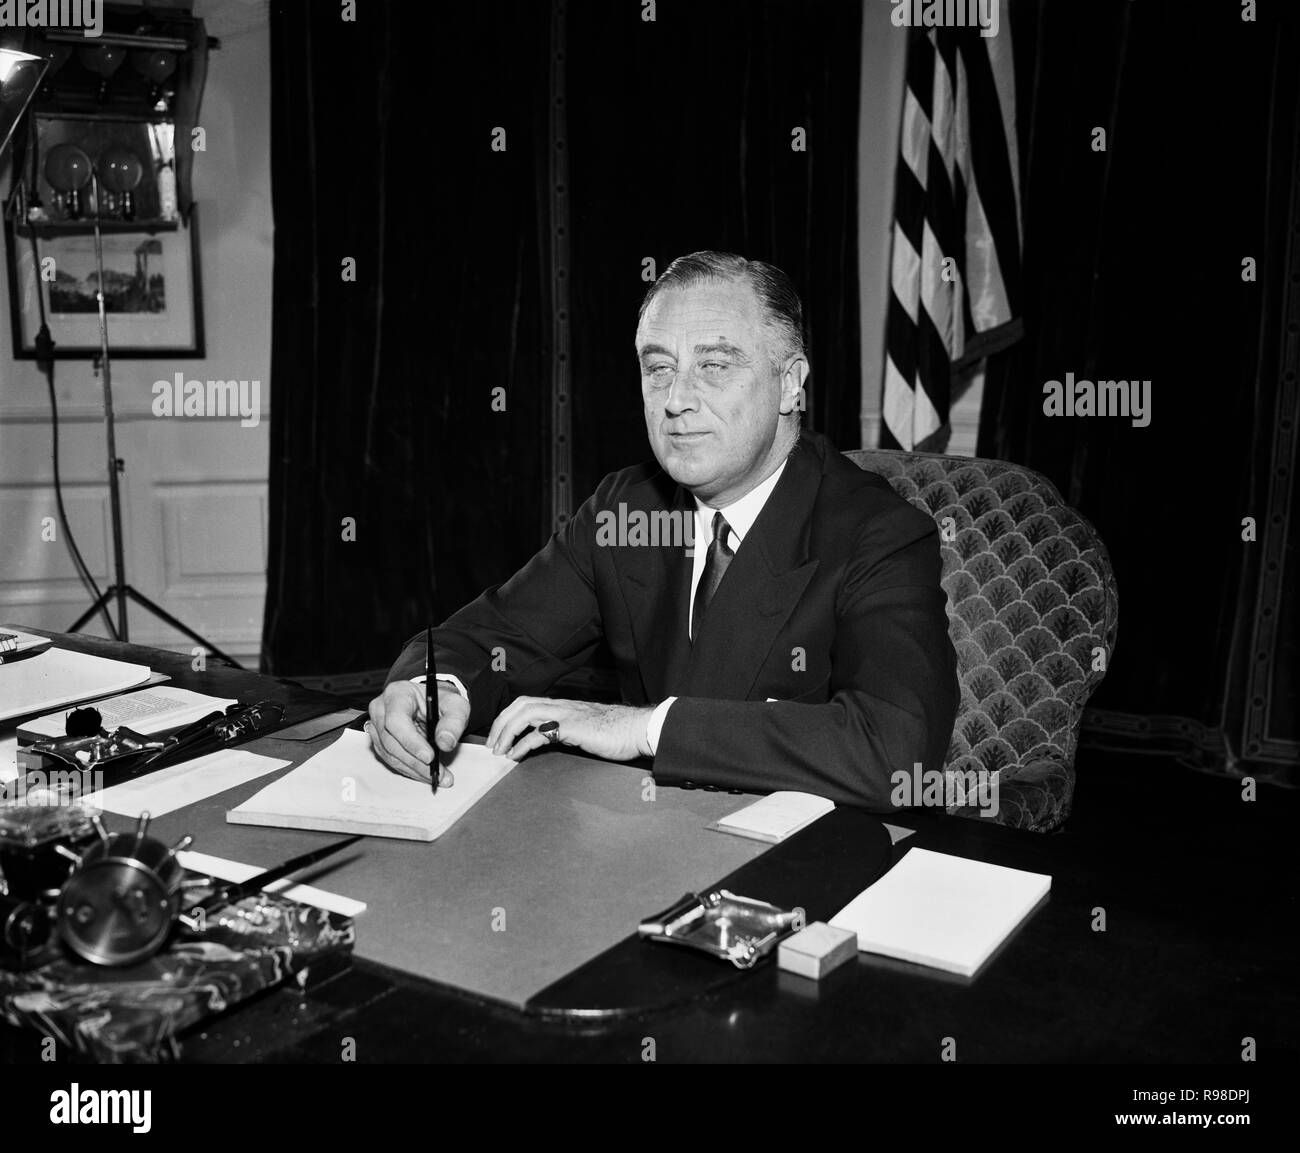 Us-Präsident Franklin Roosevelt an seinem Schreibtisch, Oval Office im Weißen Haus, Washington DC, USA, Harris & Ewing, 1934 Stockfoto